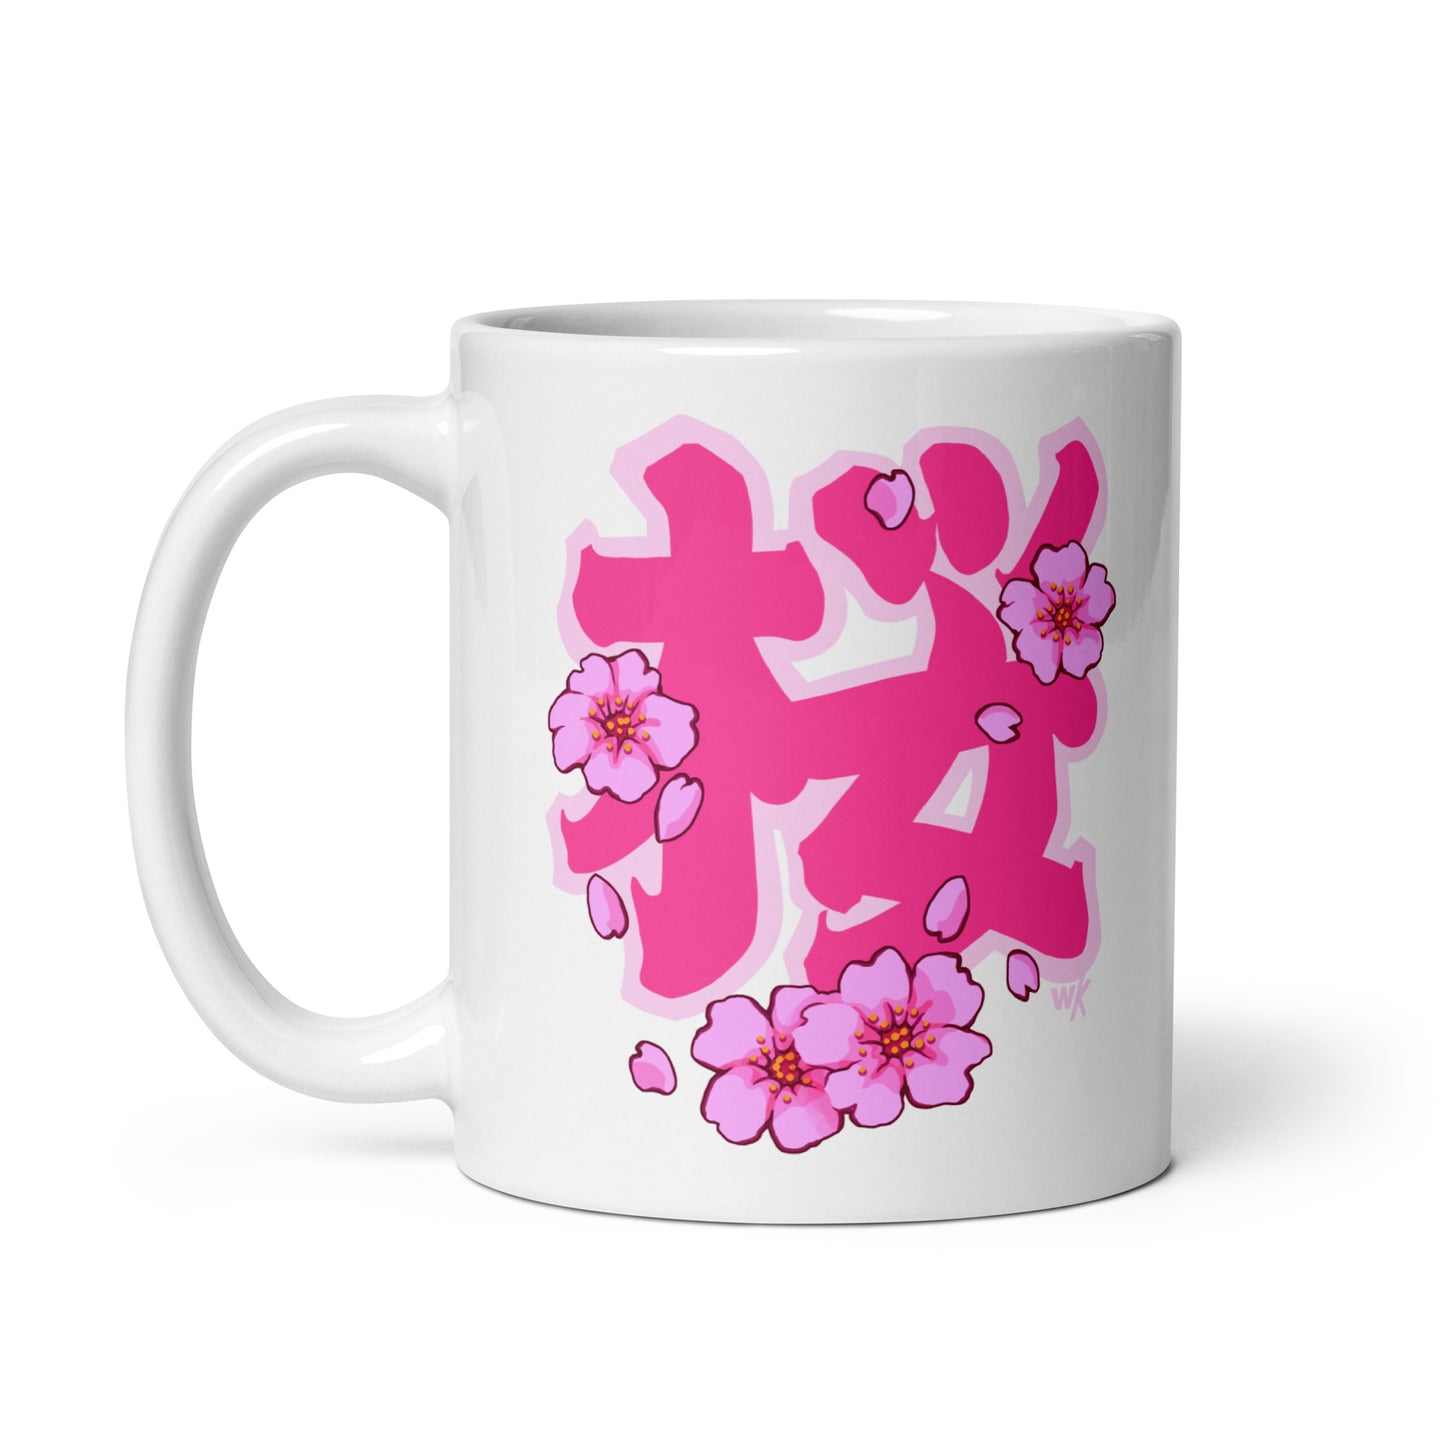 Edo Sakura White glossy mug